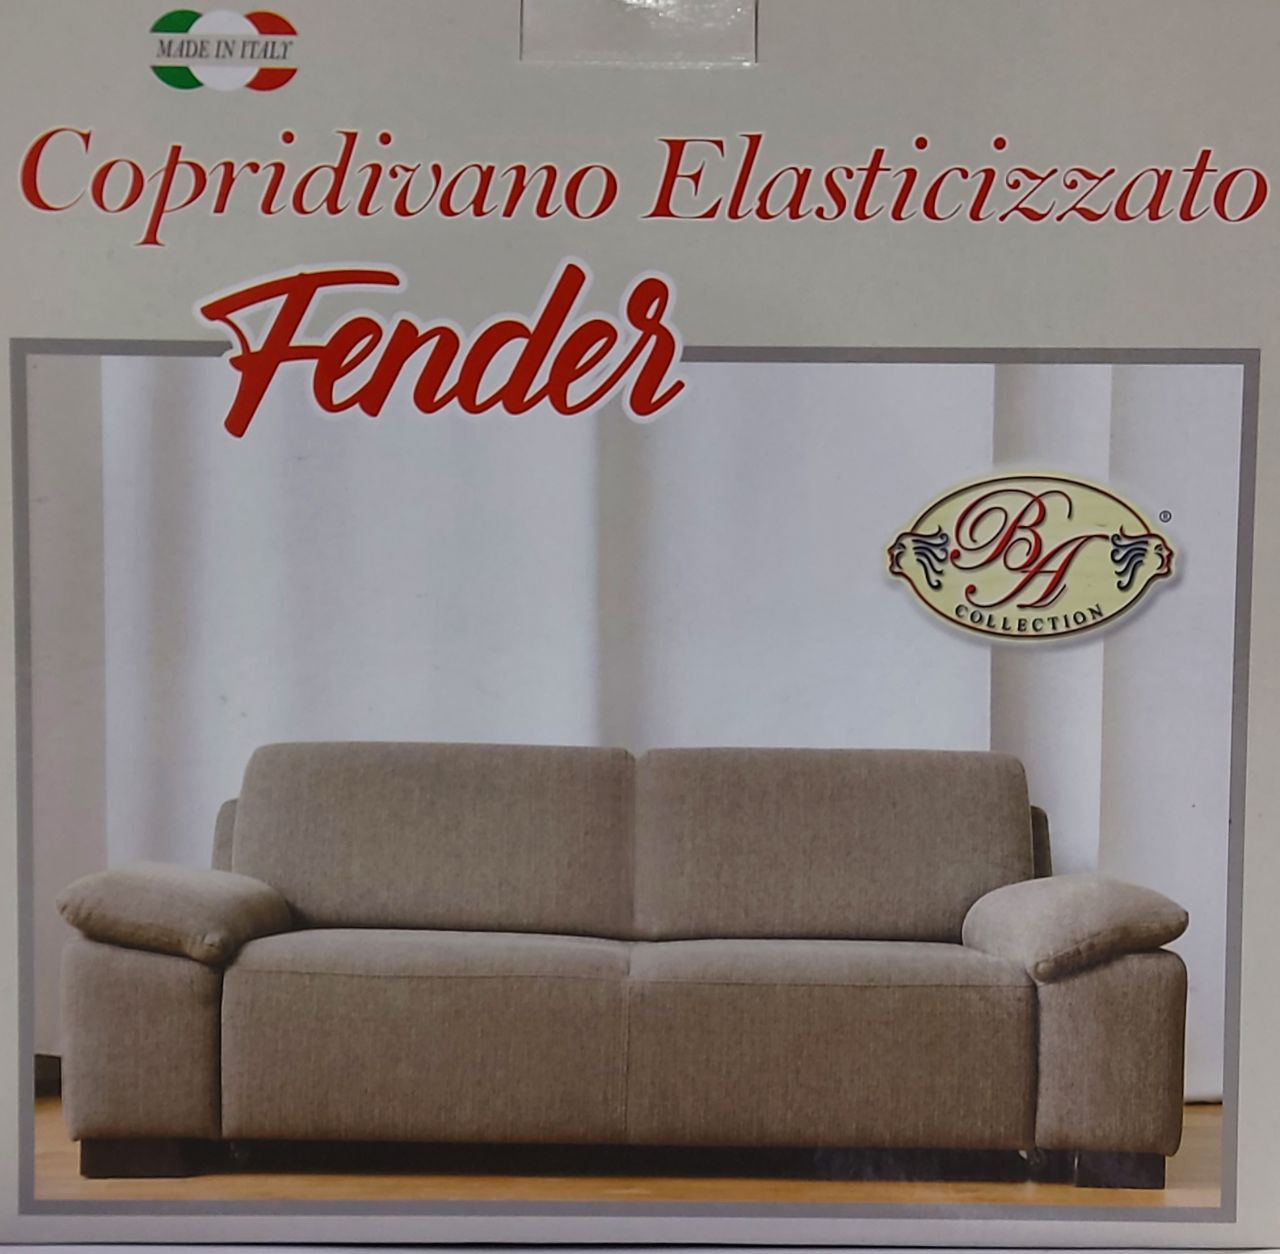 COPRIDIVANO FENDER 2 POSTI-BA COLLECTION ELASTICIZZATO -MADE IN ITALY